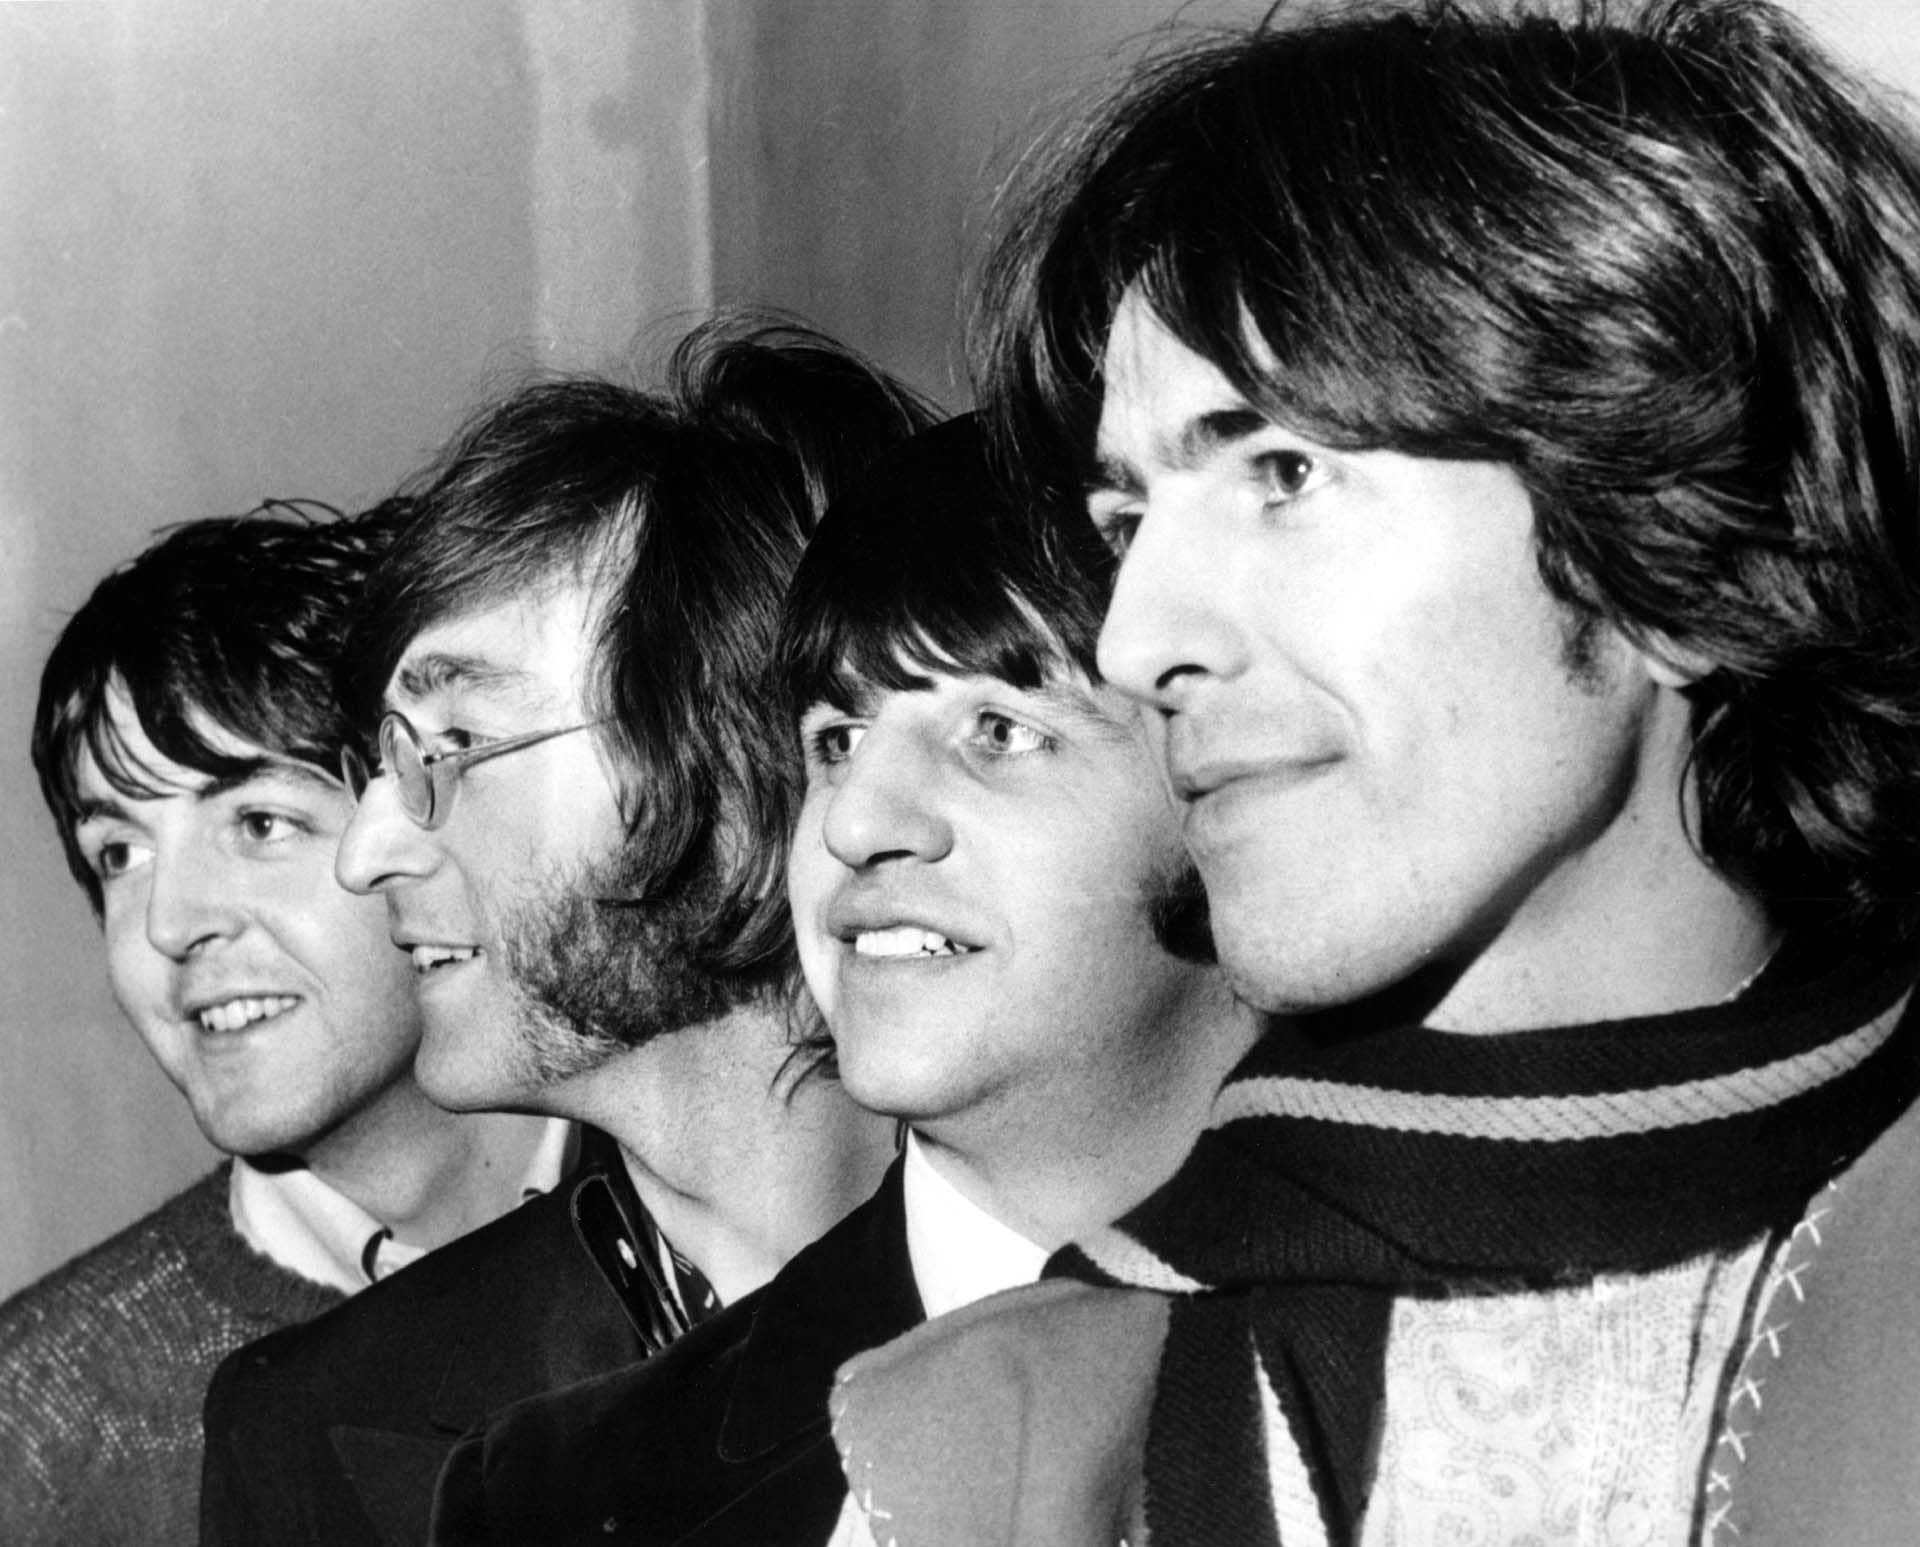 1967: La banda de rock and roll "The Beatles" posa para un retrato conjunto en 1967 (Photo by Michael Ochs Archives/Getty Images)